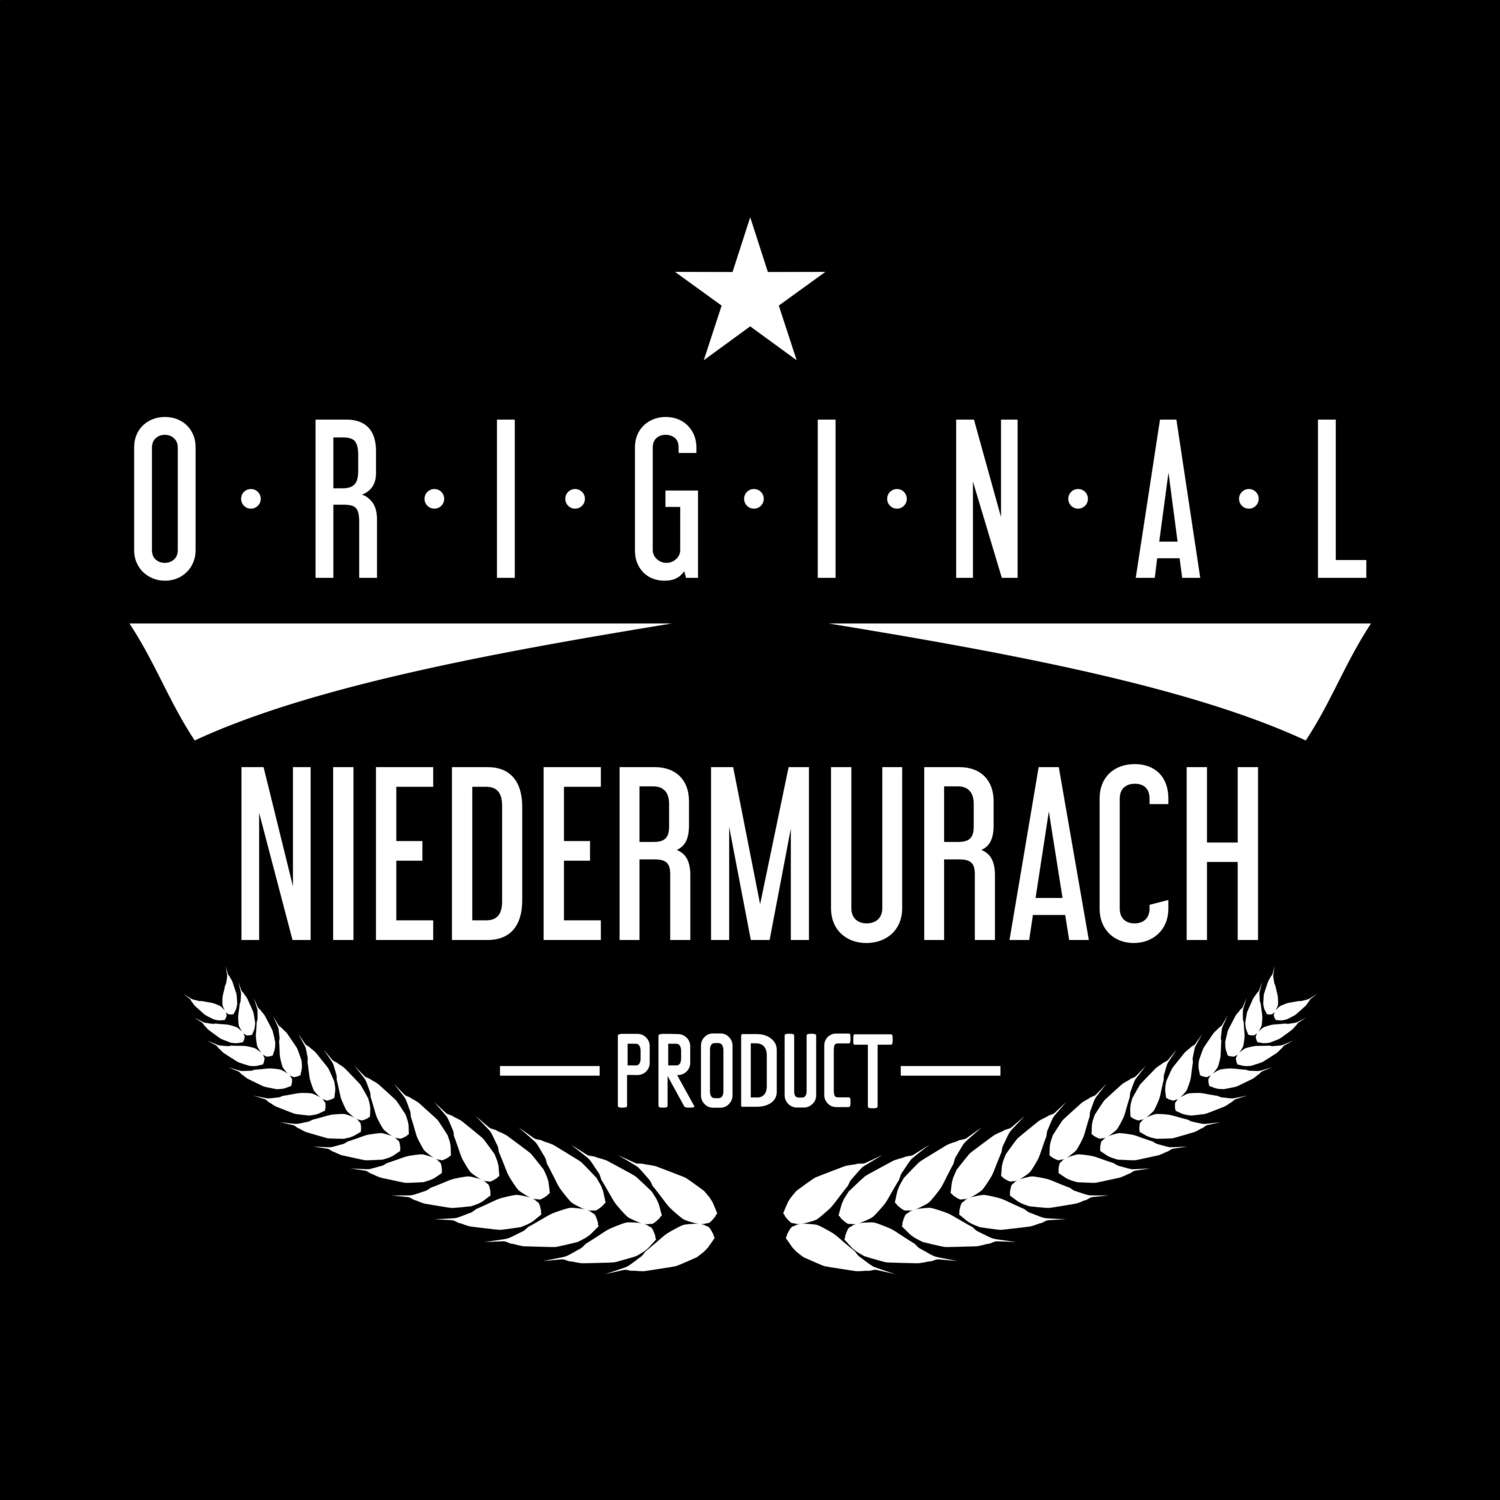 Niedermurach T-Shirt »Original Product«